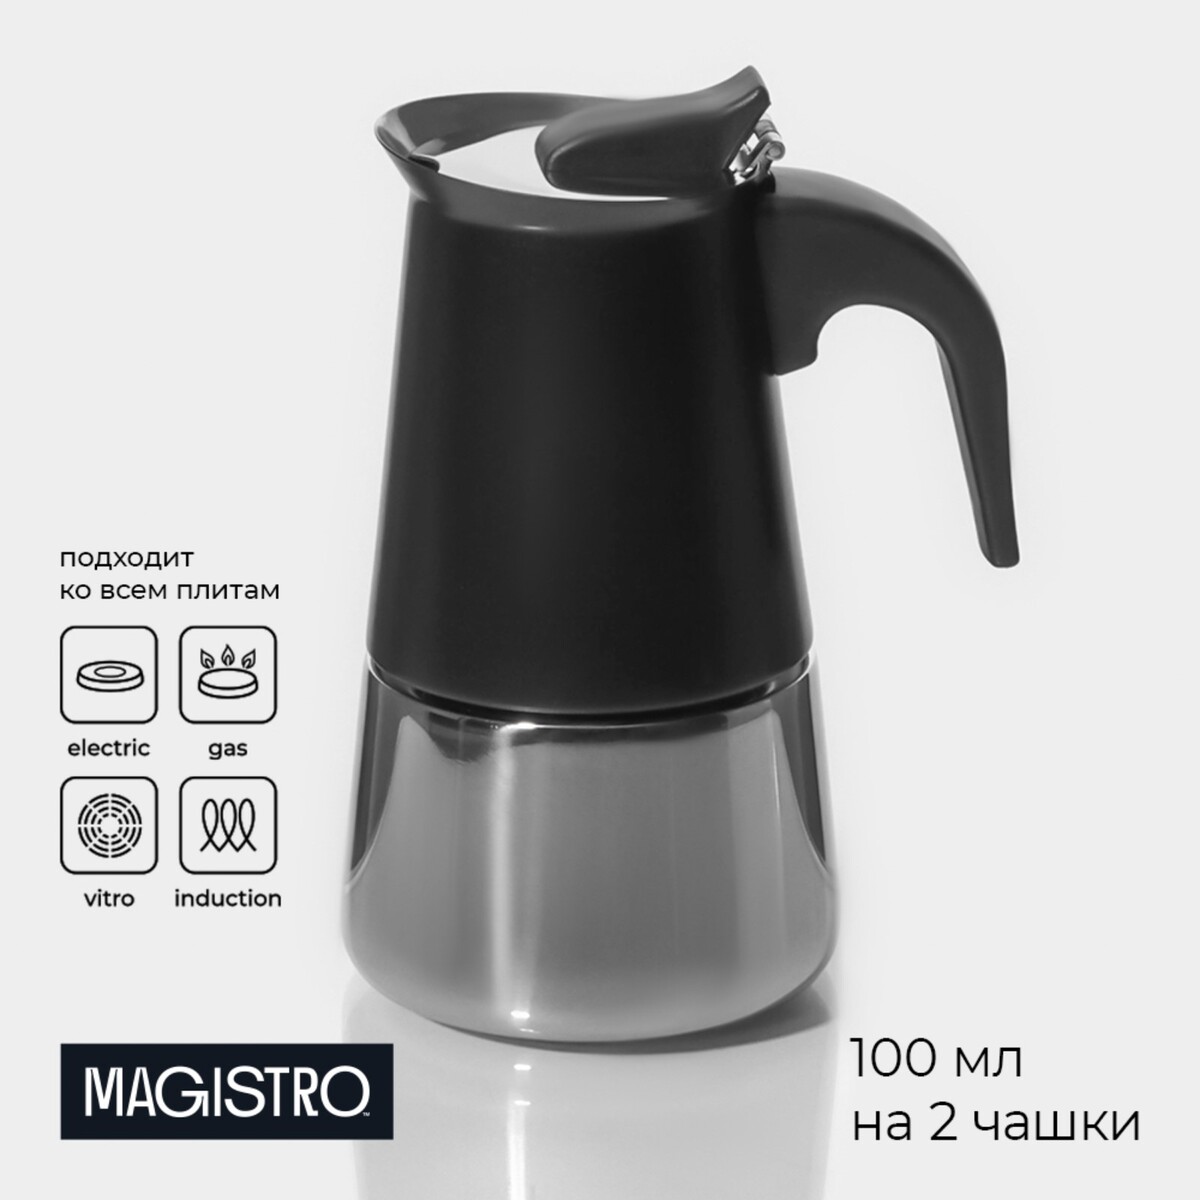 Кофеварка гейзерная magistro classic black, на 2 чашки, 100 мл, цвет черный